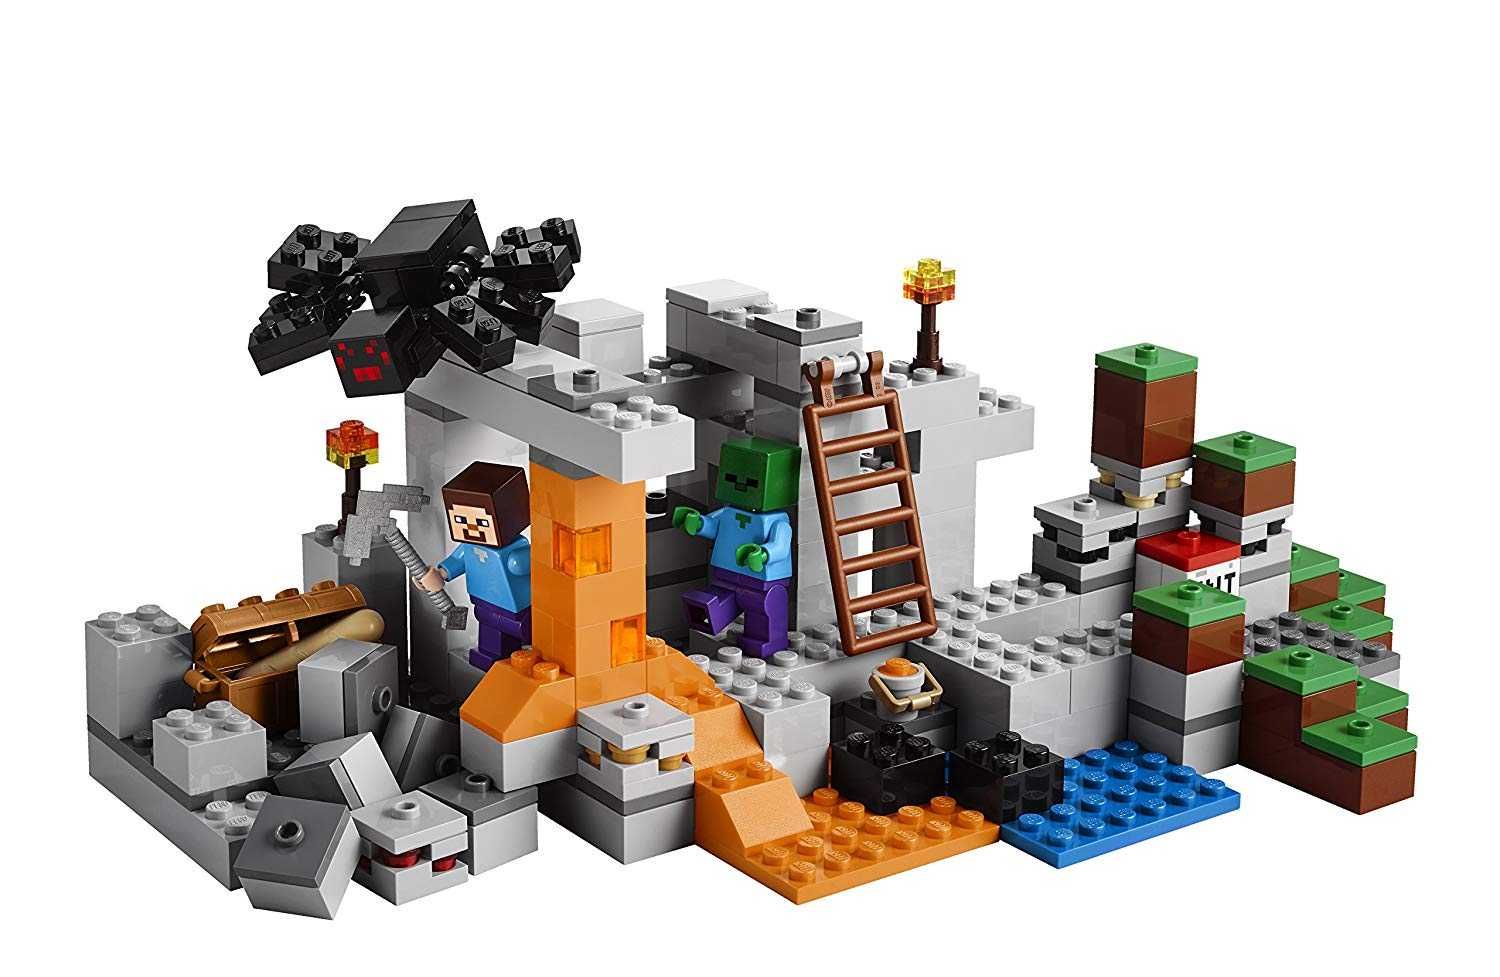 Конструктор Lego Minecraft - Пещерата (21113)